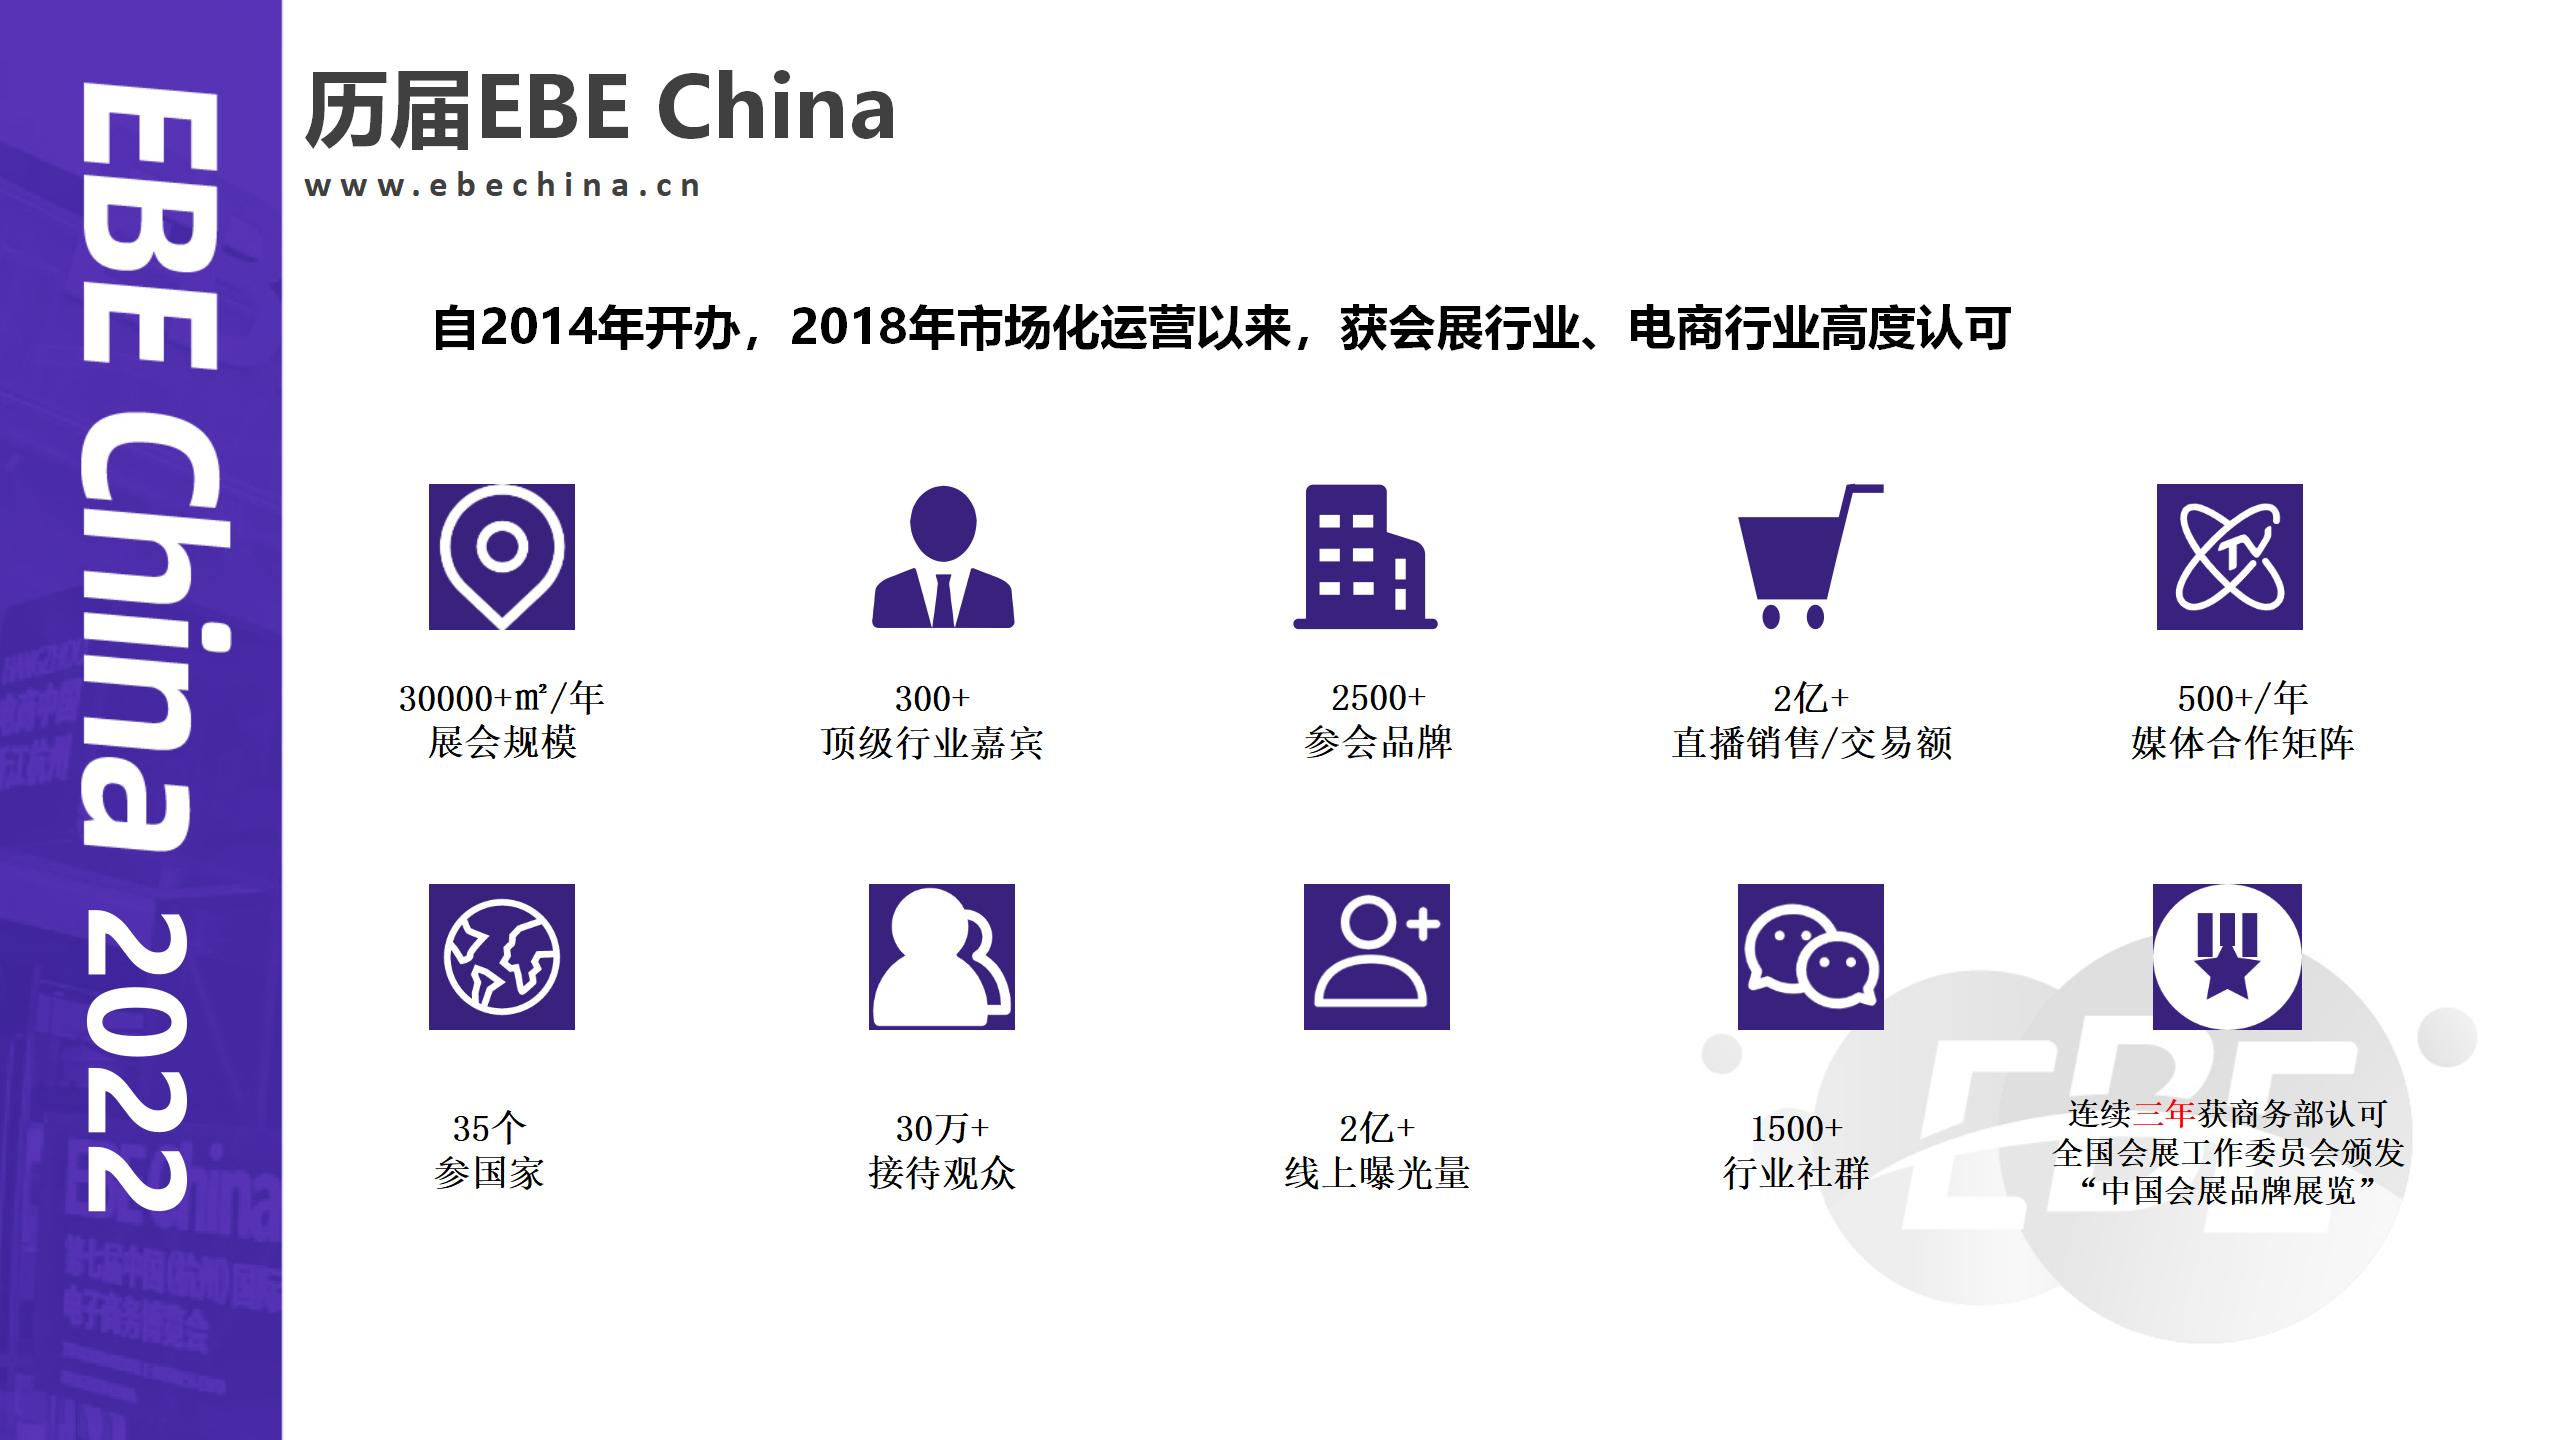 电商中国—2022年第九届中国国际电子商务博览会